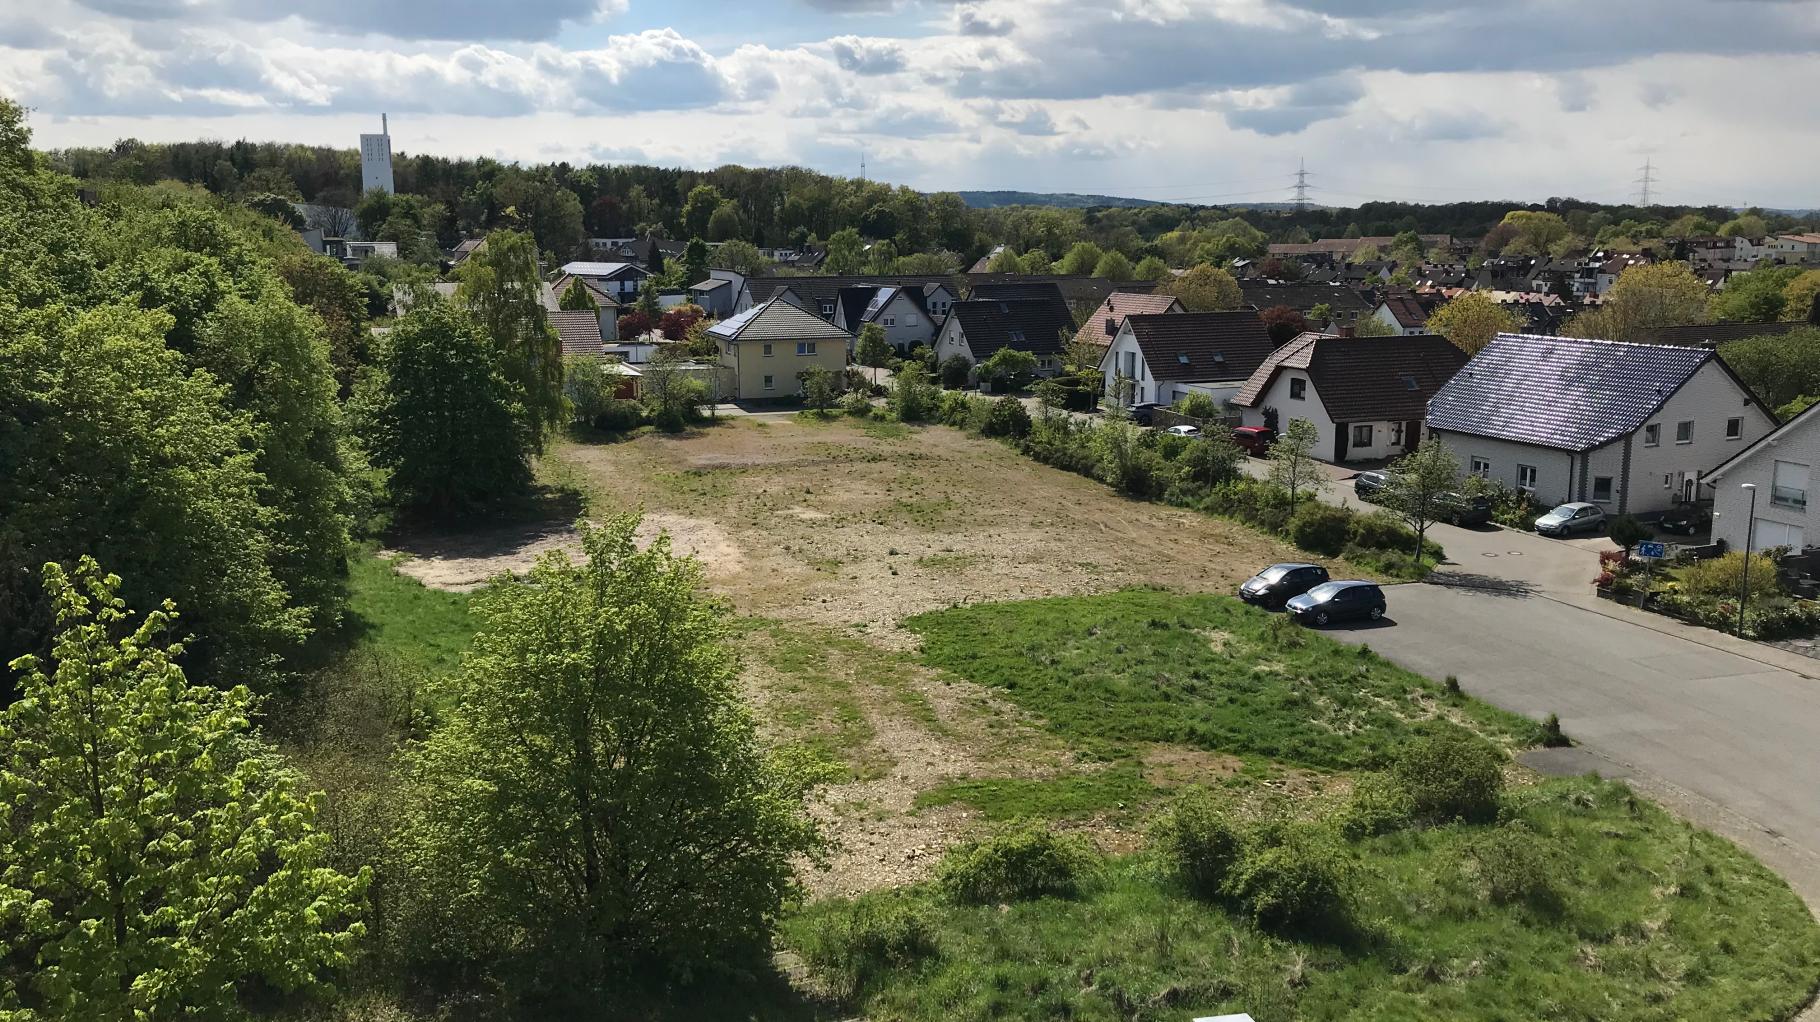 Bundesweit einmalig: Auf dem Kalkhügel Osnabrück entsteht öko-soziales Wohnprojekt